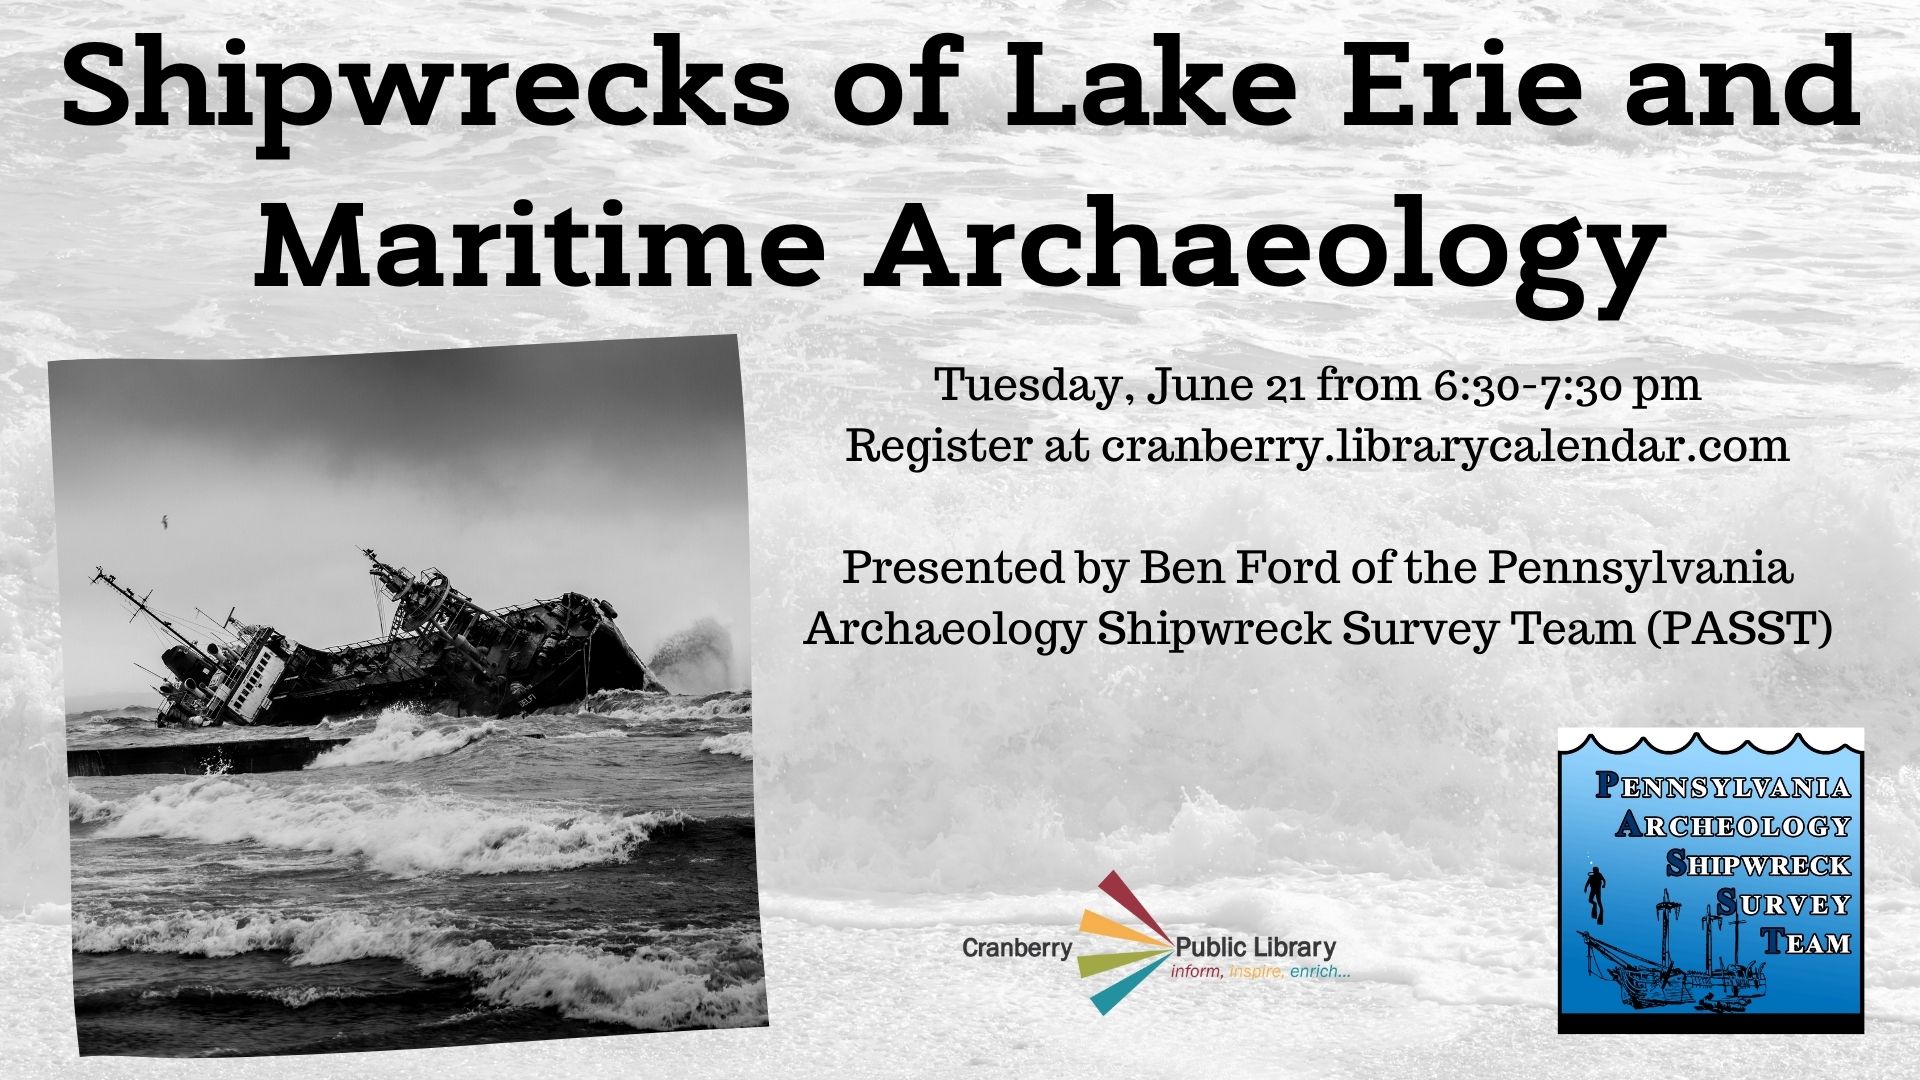 Flyer for Shipwrecks of Lake Erie program